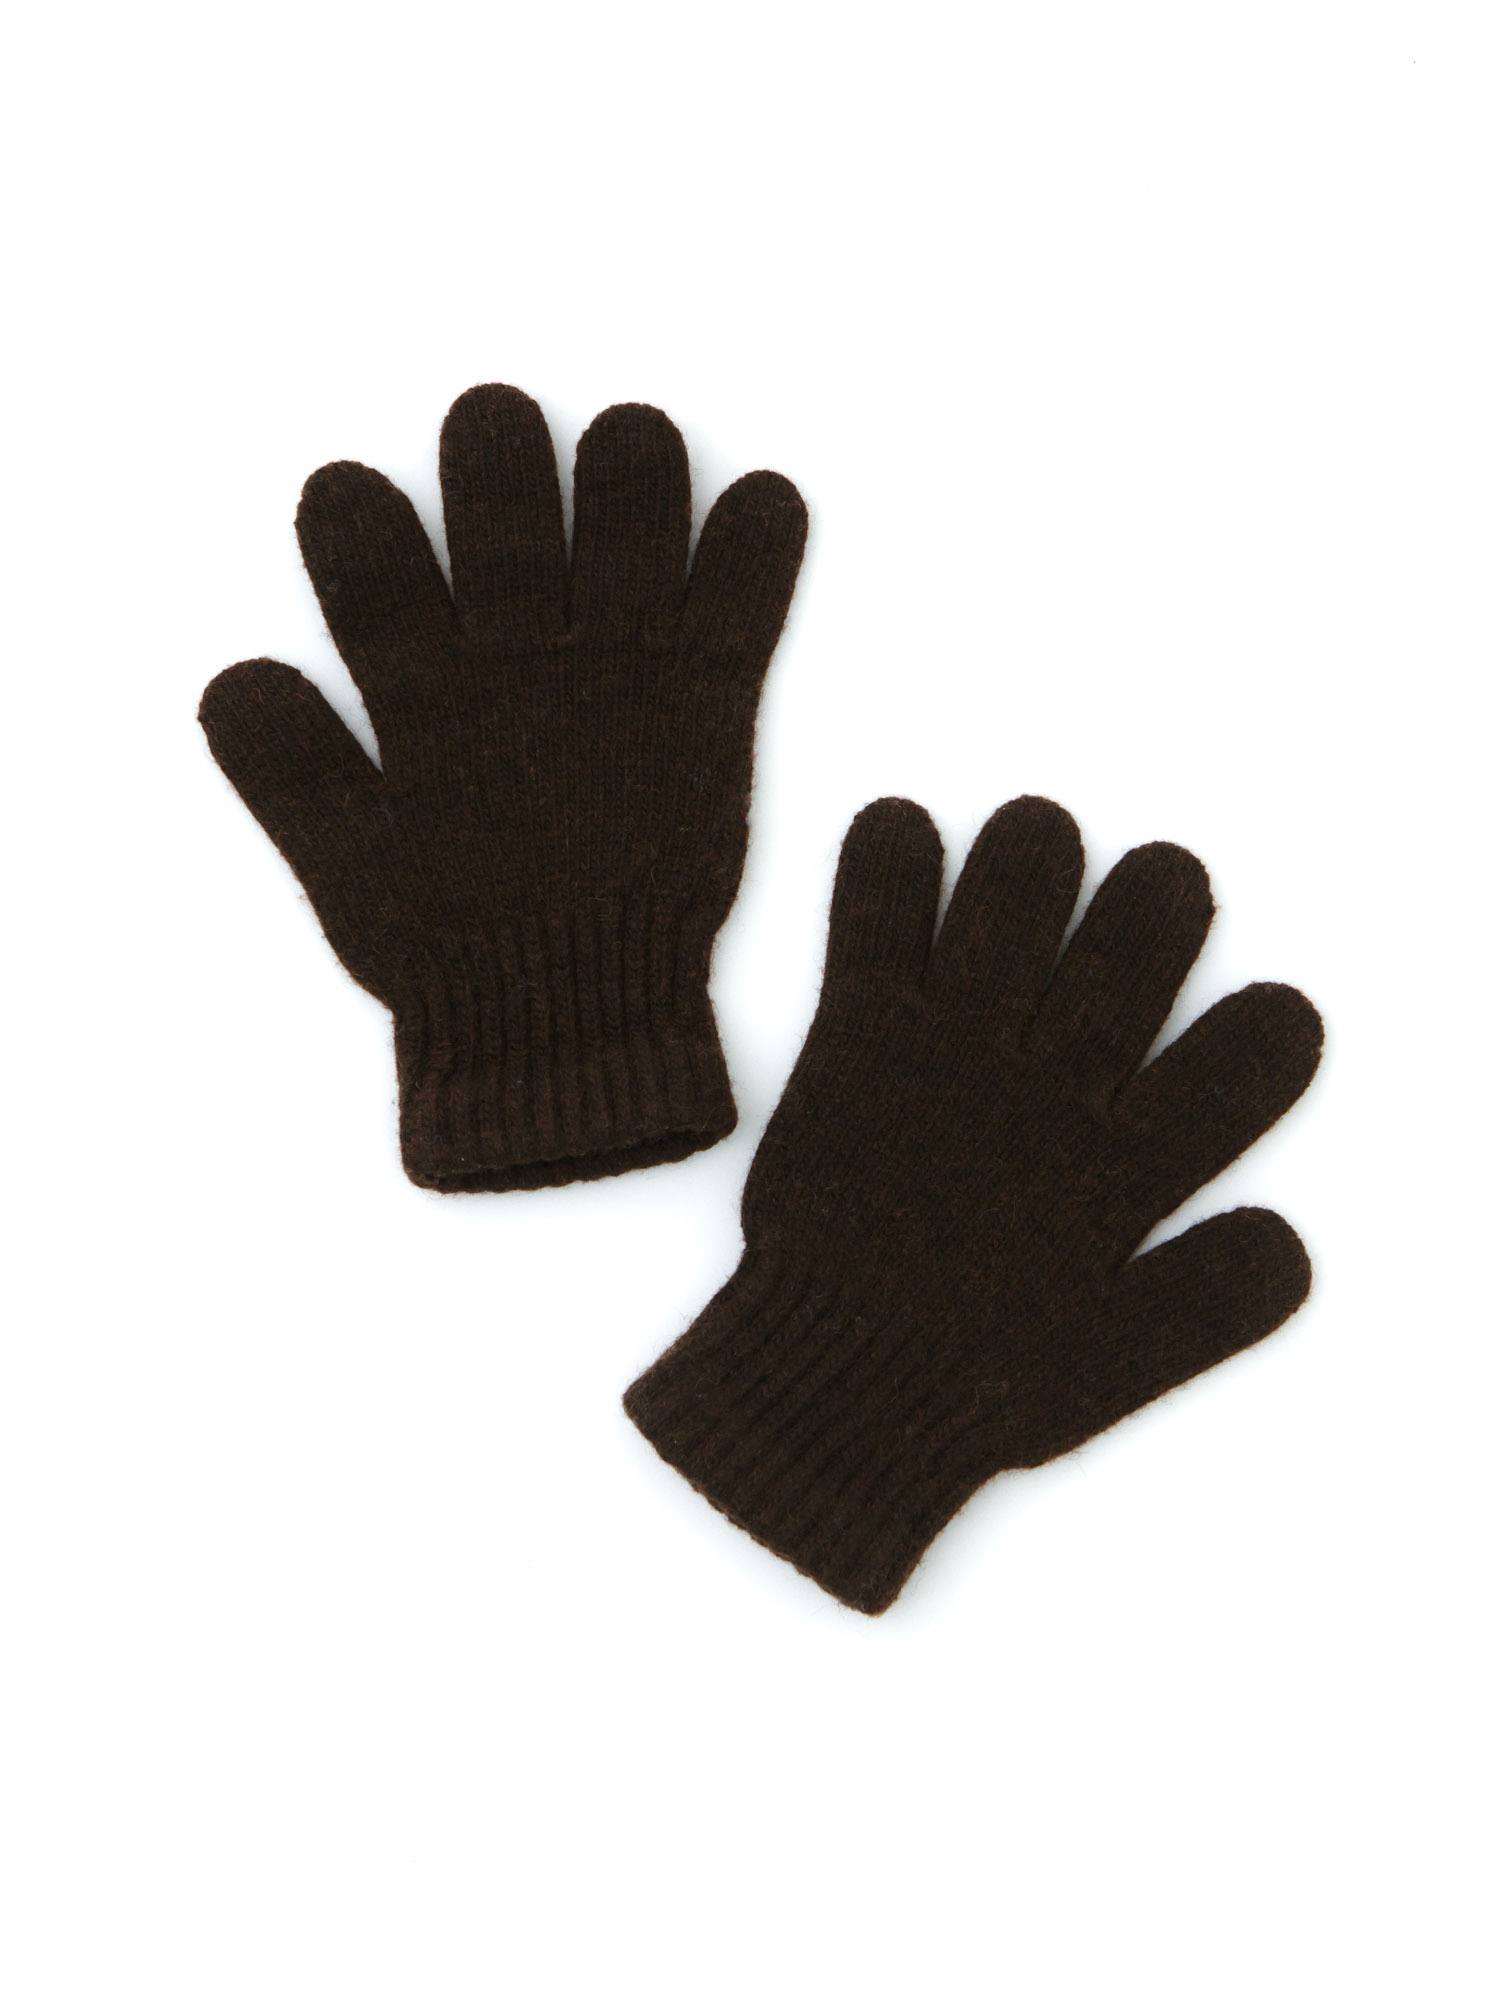 Детские перчатки из монгольской шерсти СК ТК БАТСЕЖY, цвет тёмно-коричневый